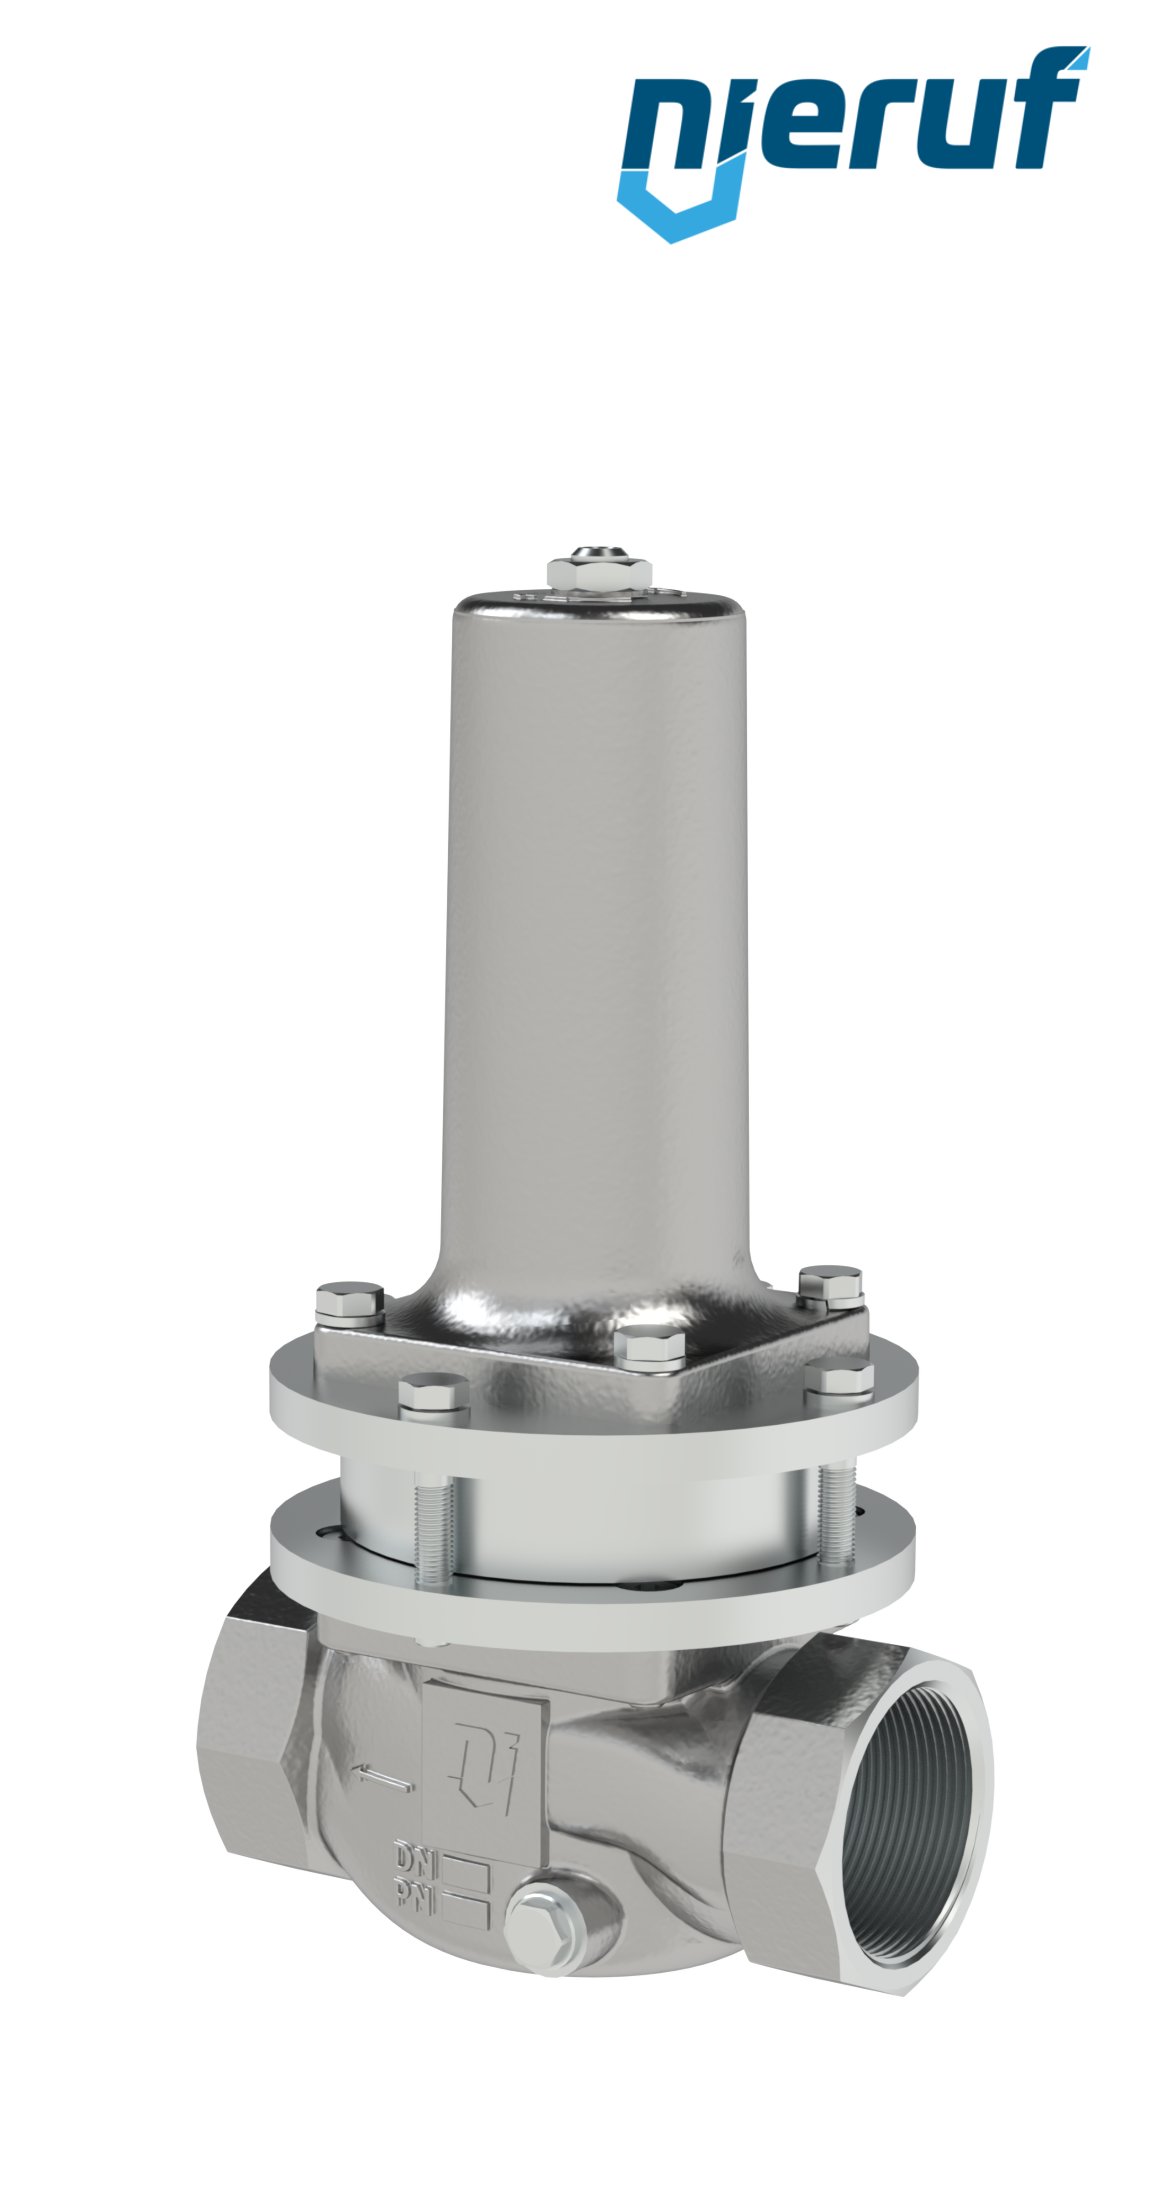 réducteur de pression pour vapeur 1 1/4" pouce NPT DM21 acier inoxydable PTFE / EPDM / FEPM 0.3 - 2.0 bar